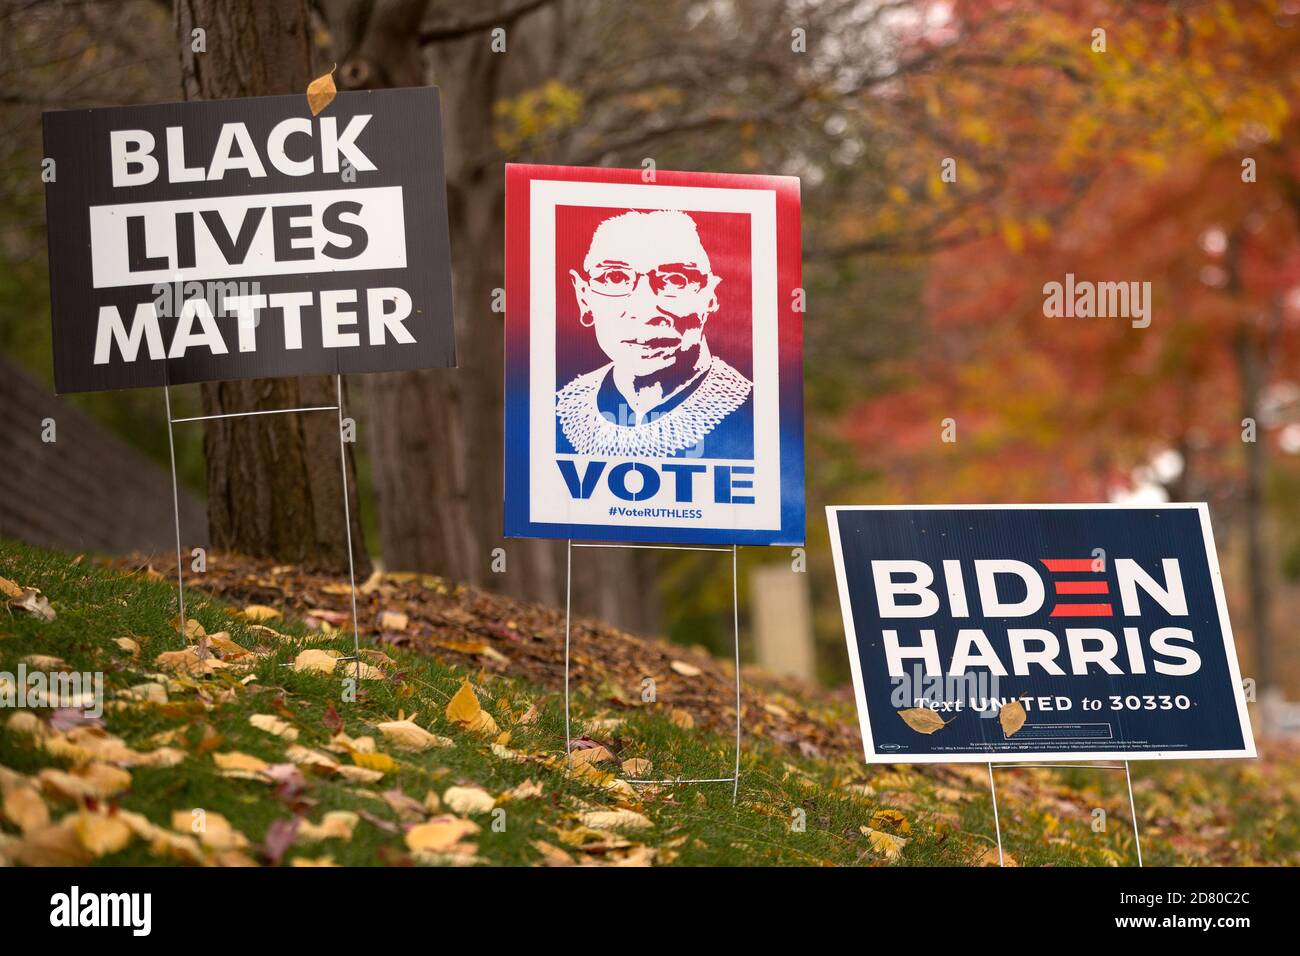 2020 yard Signs Black Lives Matter, ritratto di Ruth Bader Ginsburg con le parole Vota e VoteRUTHLESS, Joe Biden elezione presidenziale Foto Stock